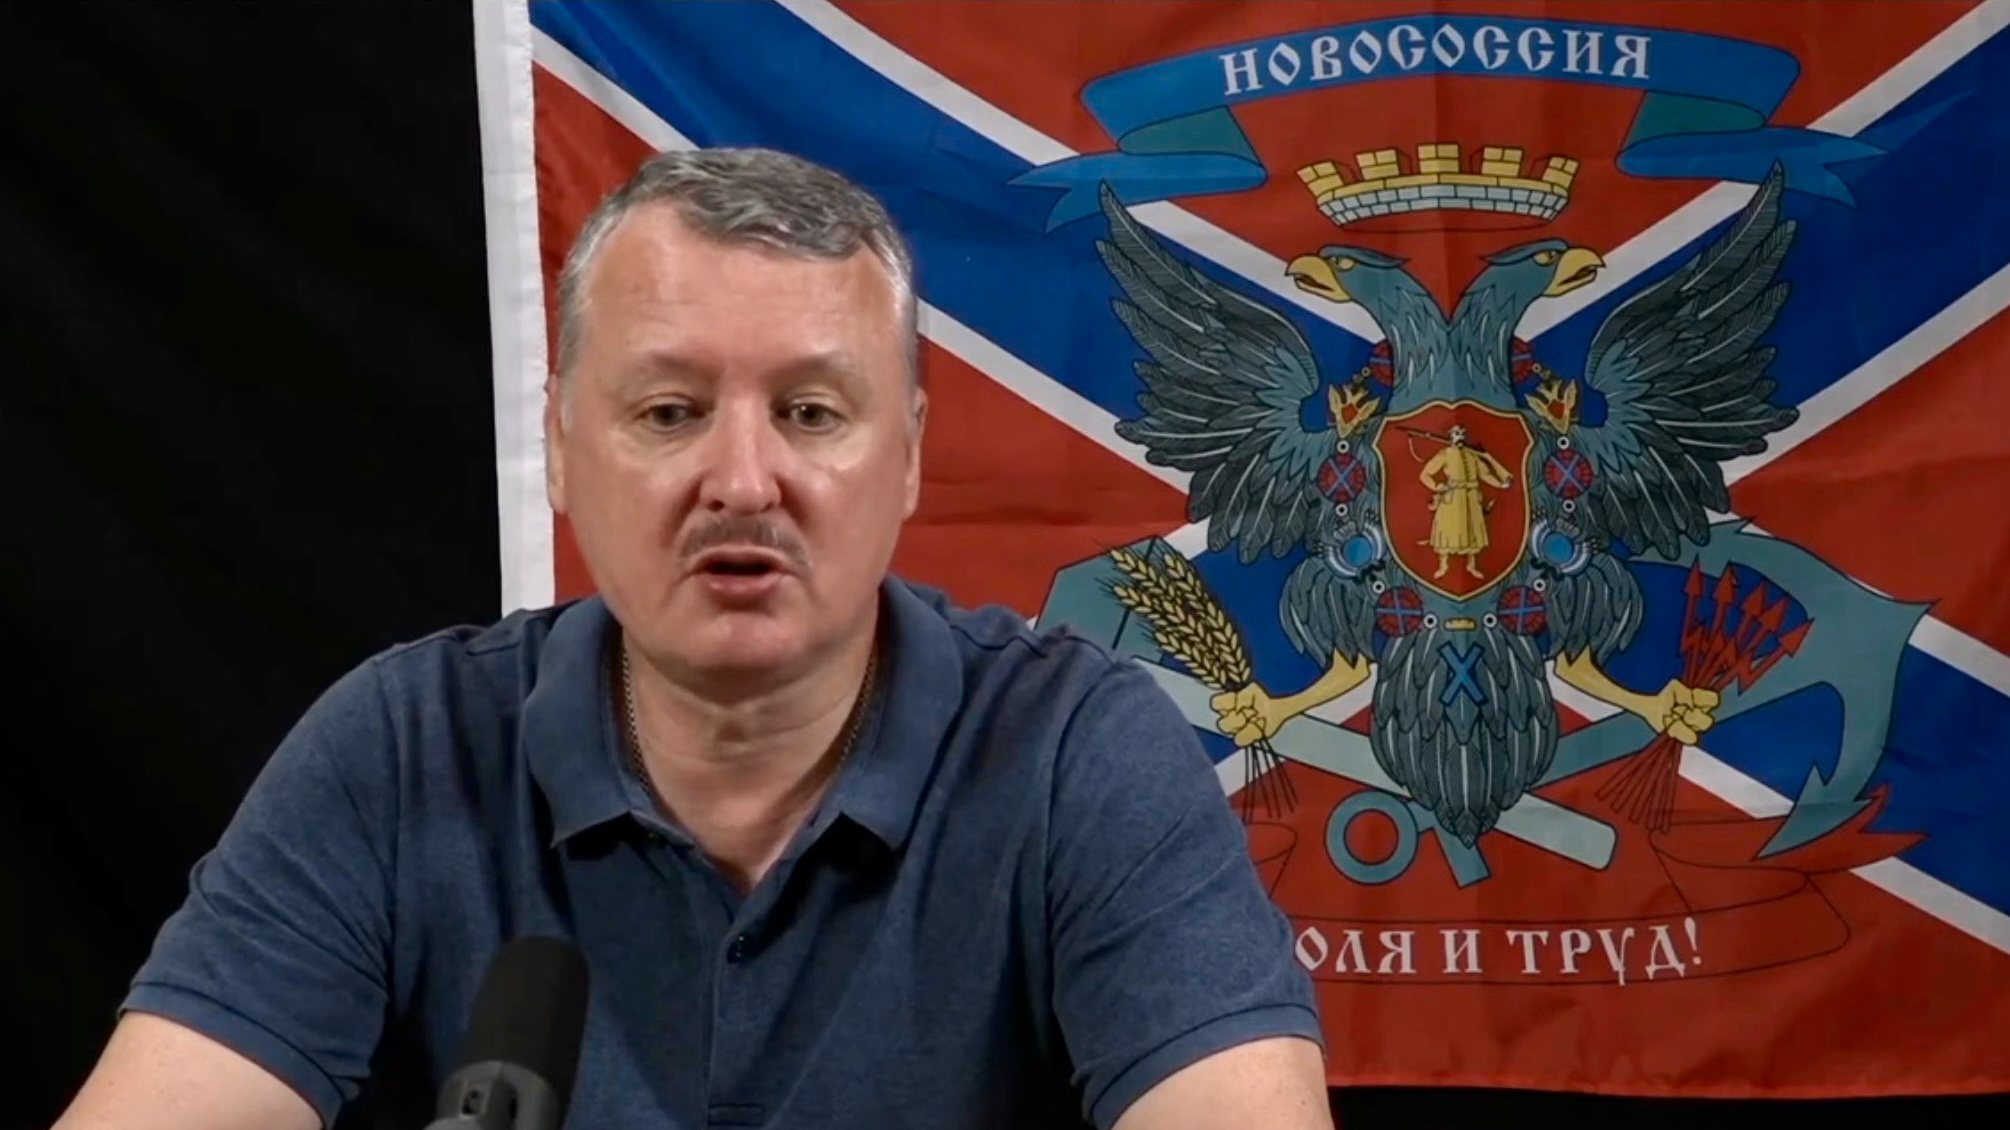 Igor Girkin foi oficial do Serviço Federal de Segurança (FSB) da Rússia, tendo ficado conhecido por ter liderado as forças rebeldes russas na invasão do Donbass, em 2014